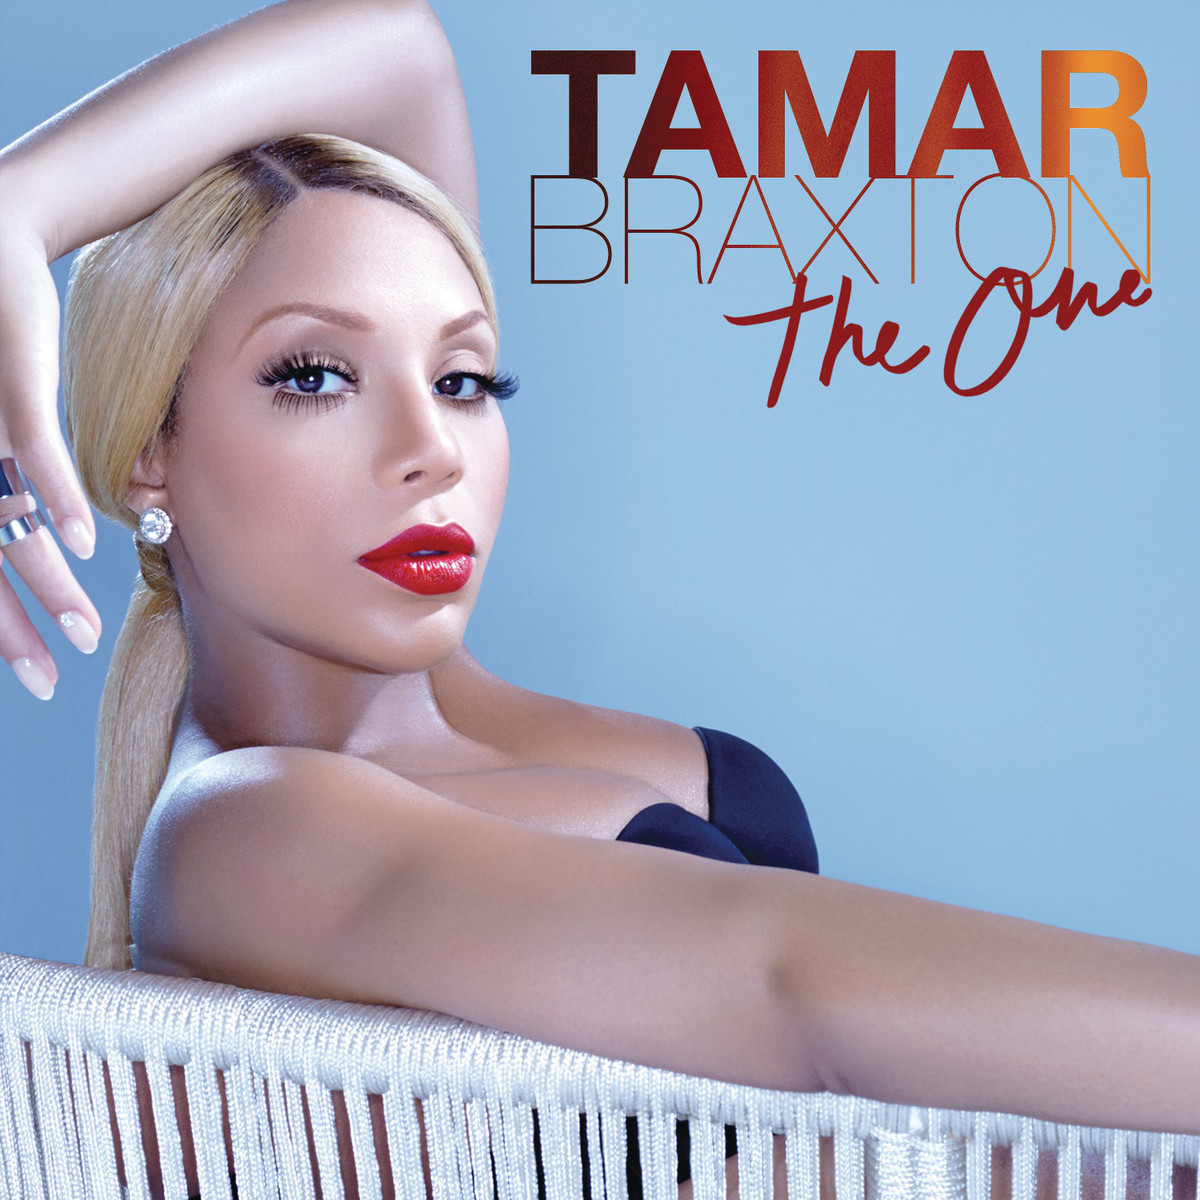 Tamar-Braxton-The-One-2013-1200x1200